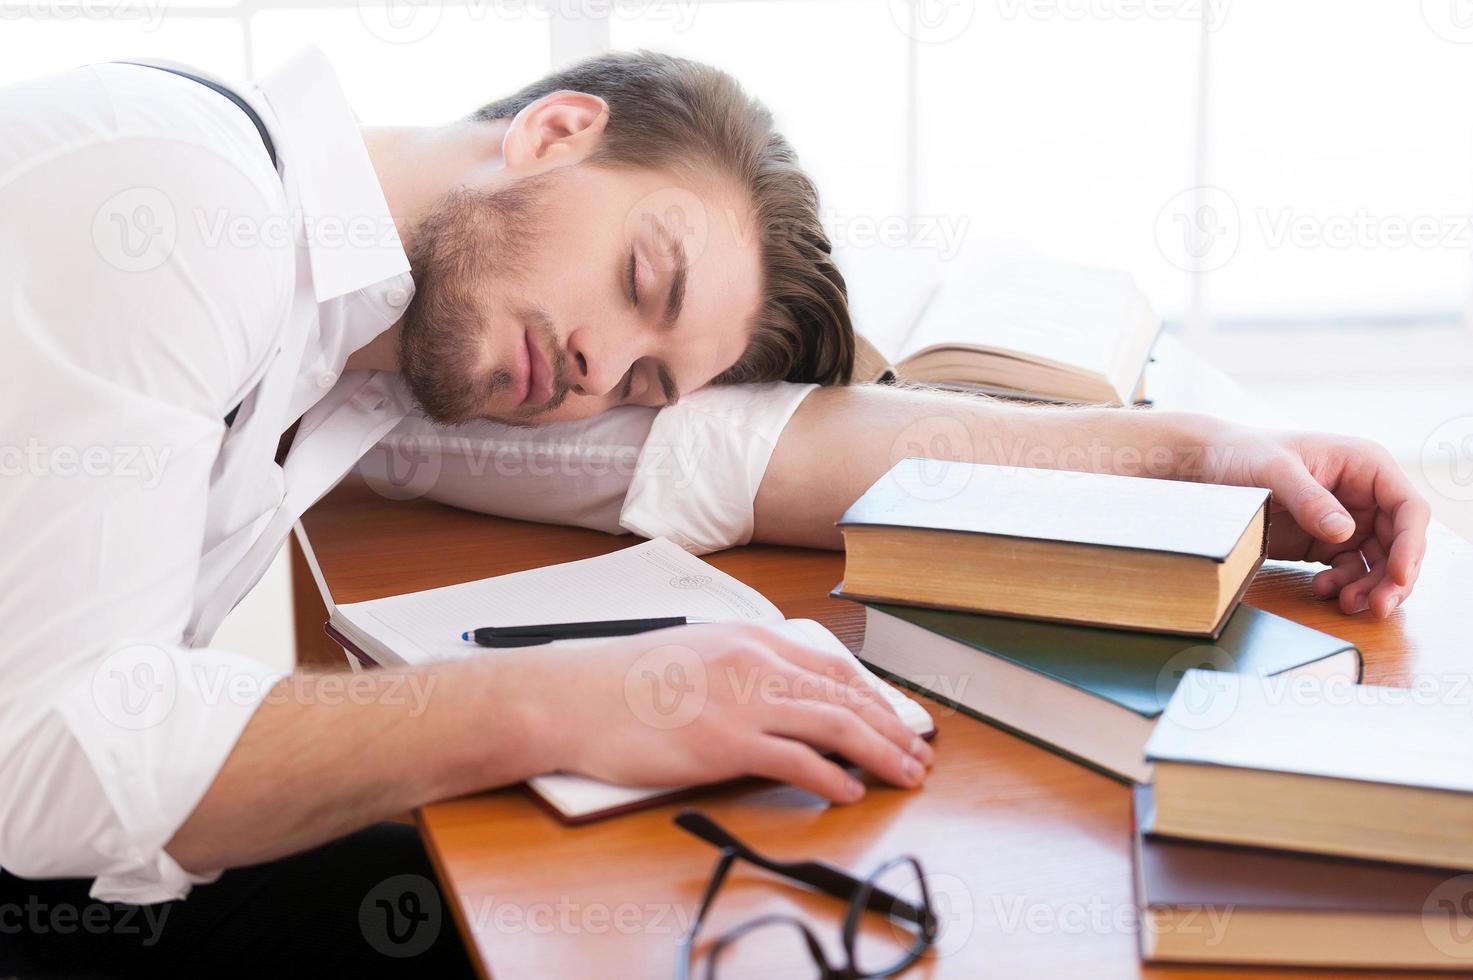 cansado depois da noite de pesquisa. vista traseira do jovem pensativo de camisa e suspensórios sentado na mesa e lendo um livro deitado sobre ele foto